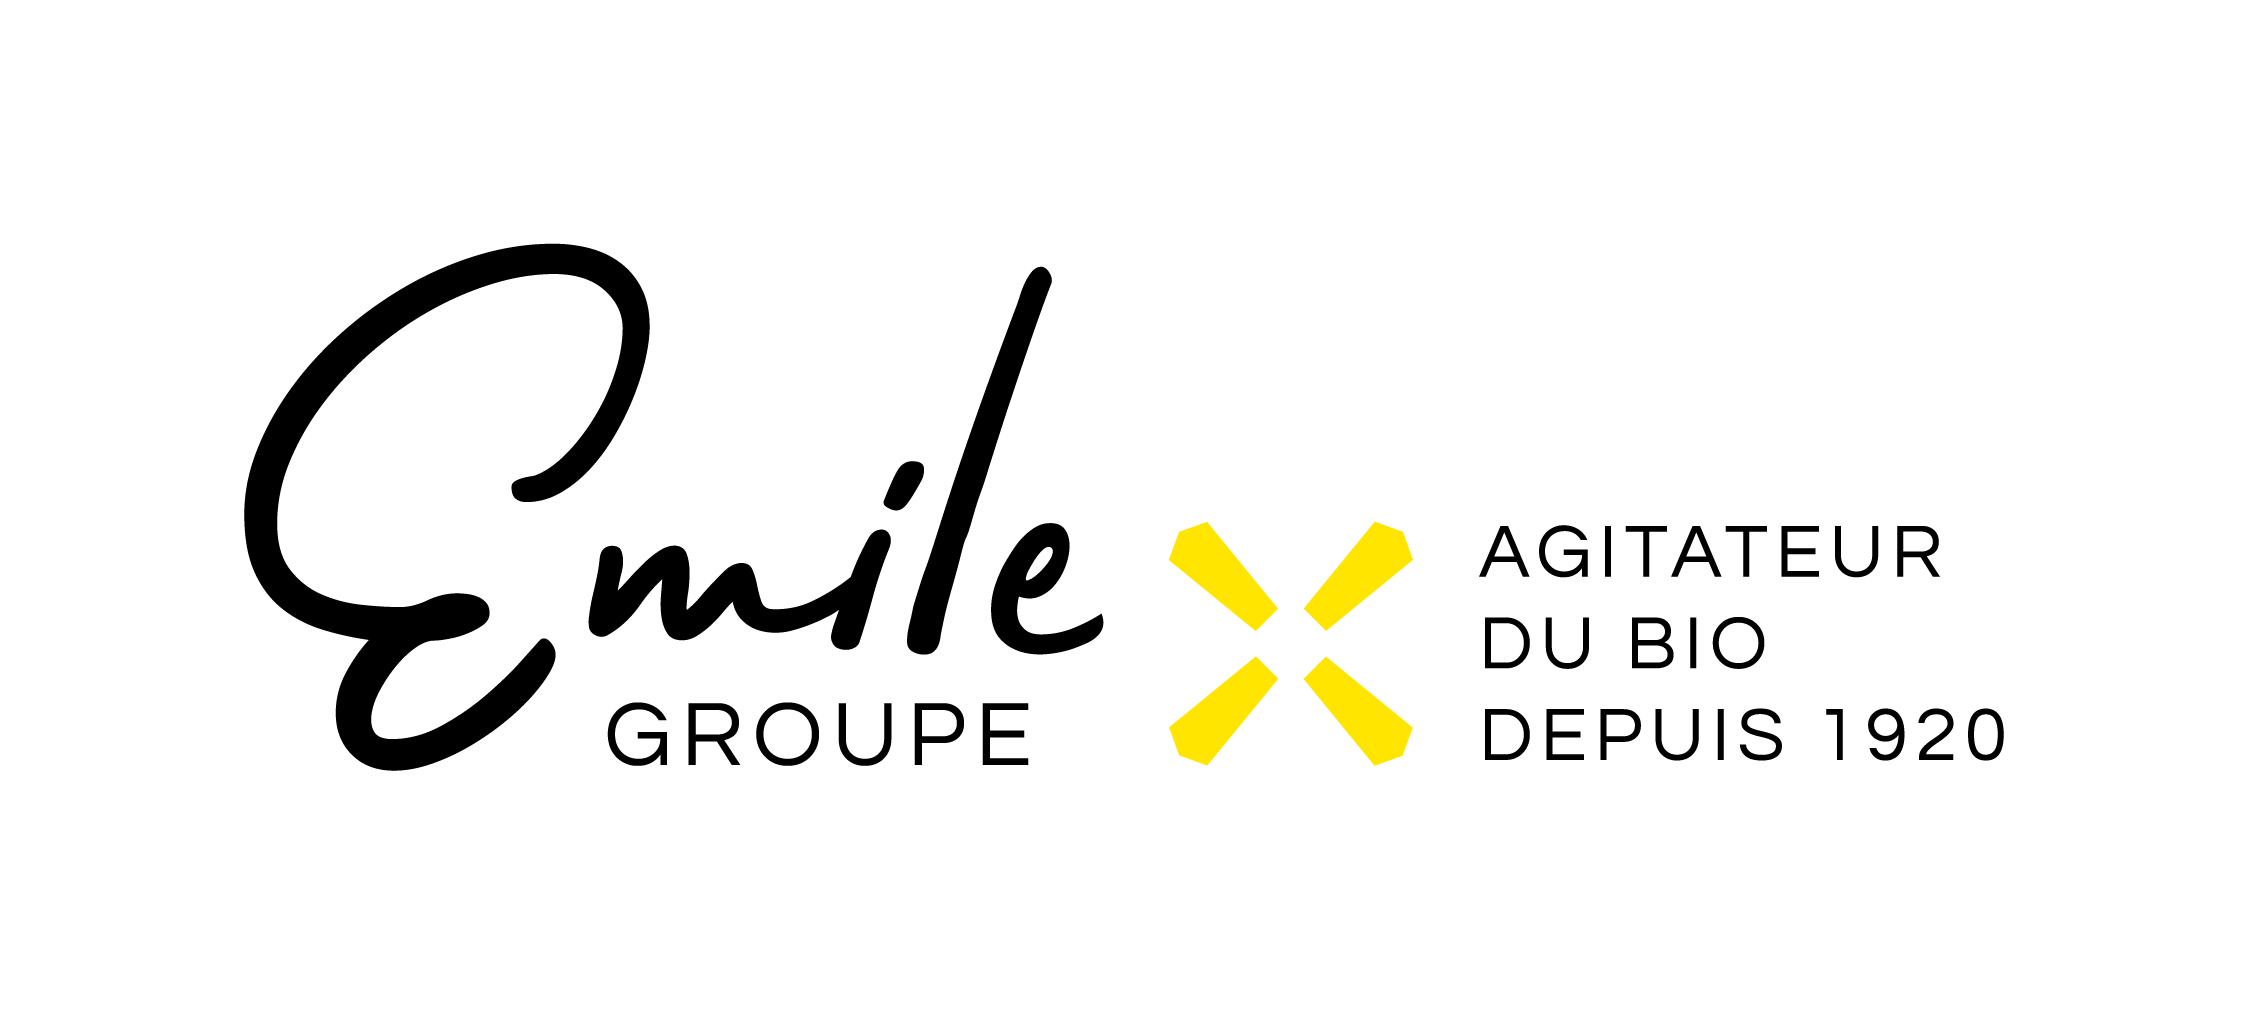 Groupe Emile 1